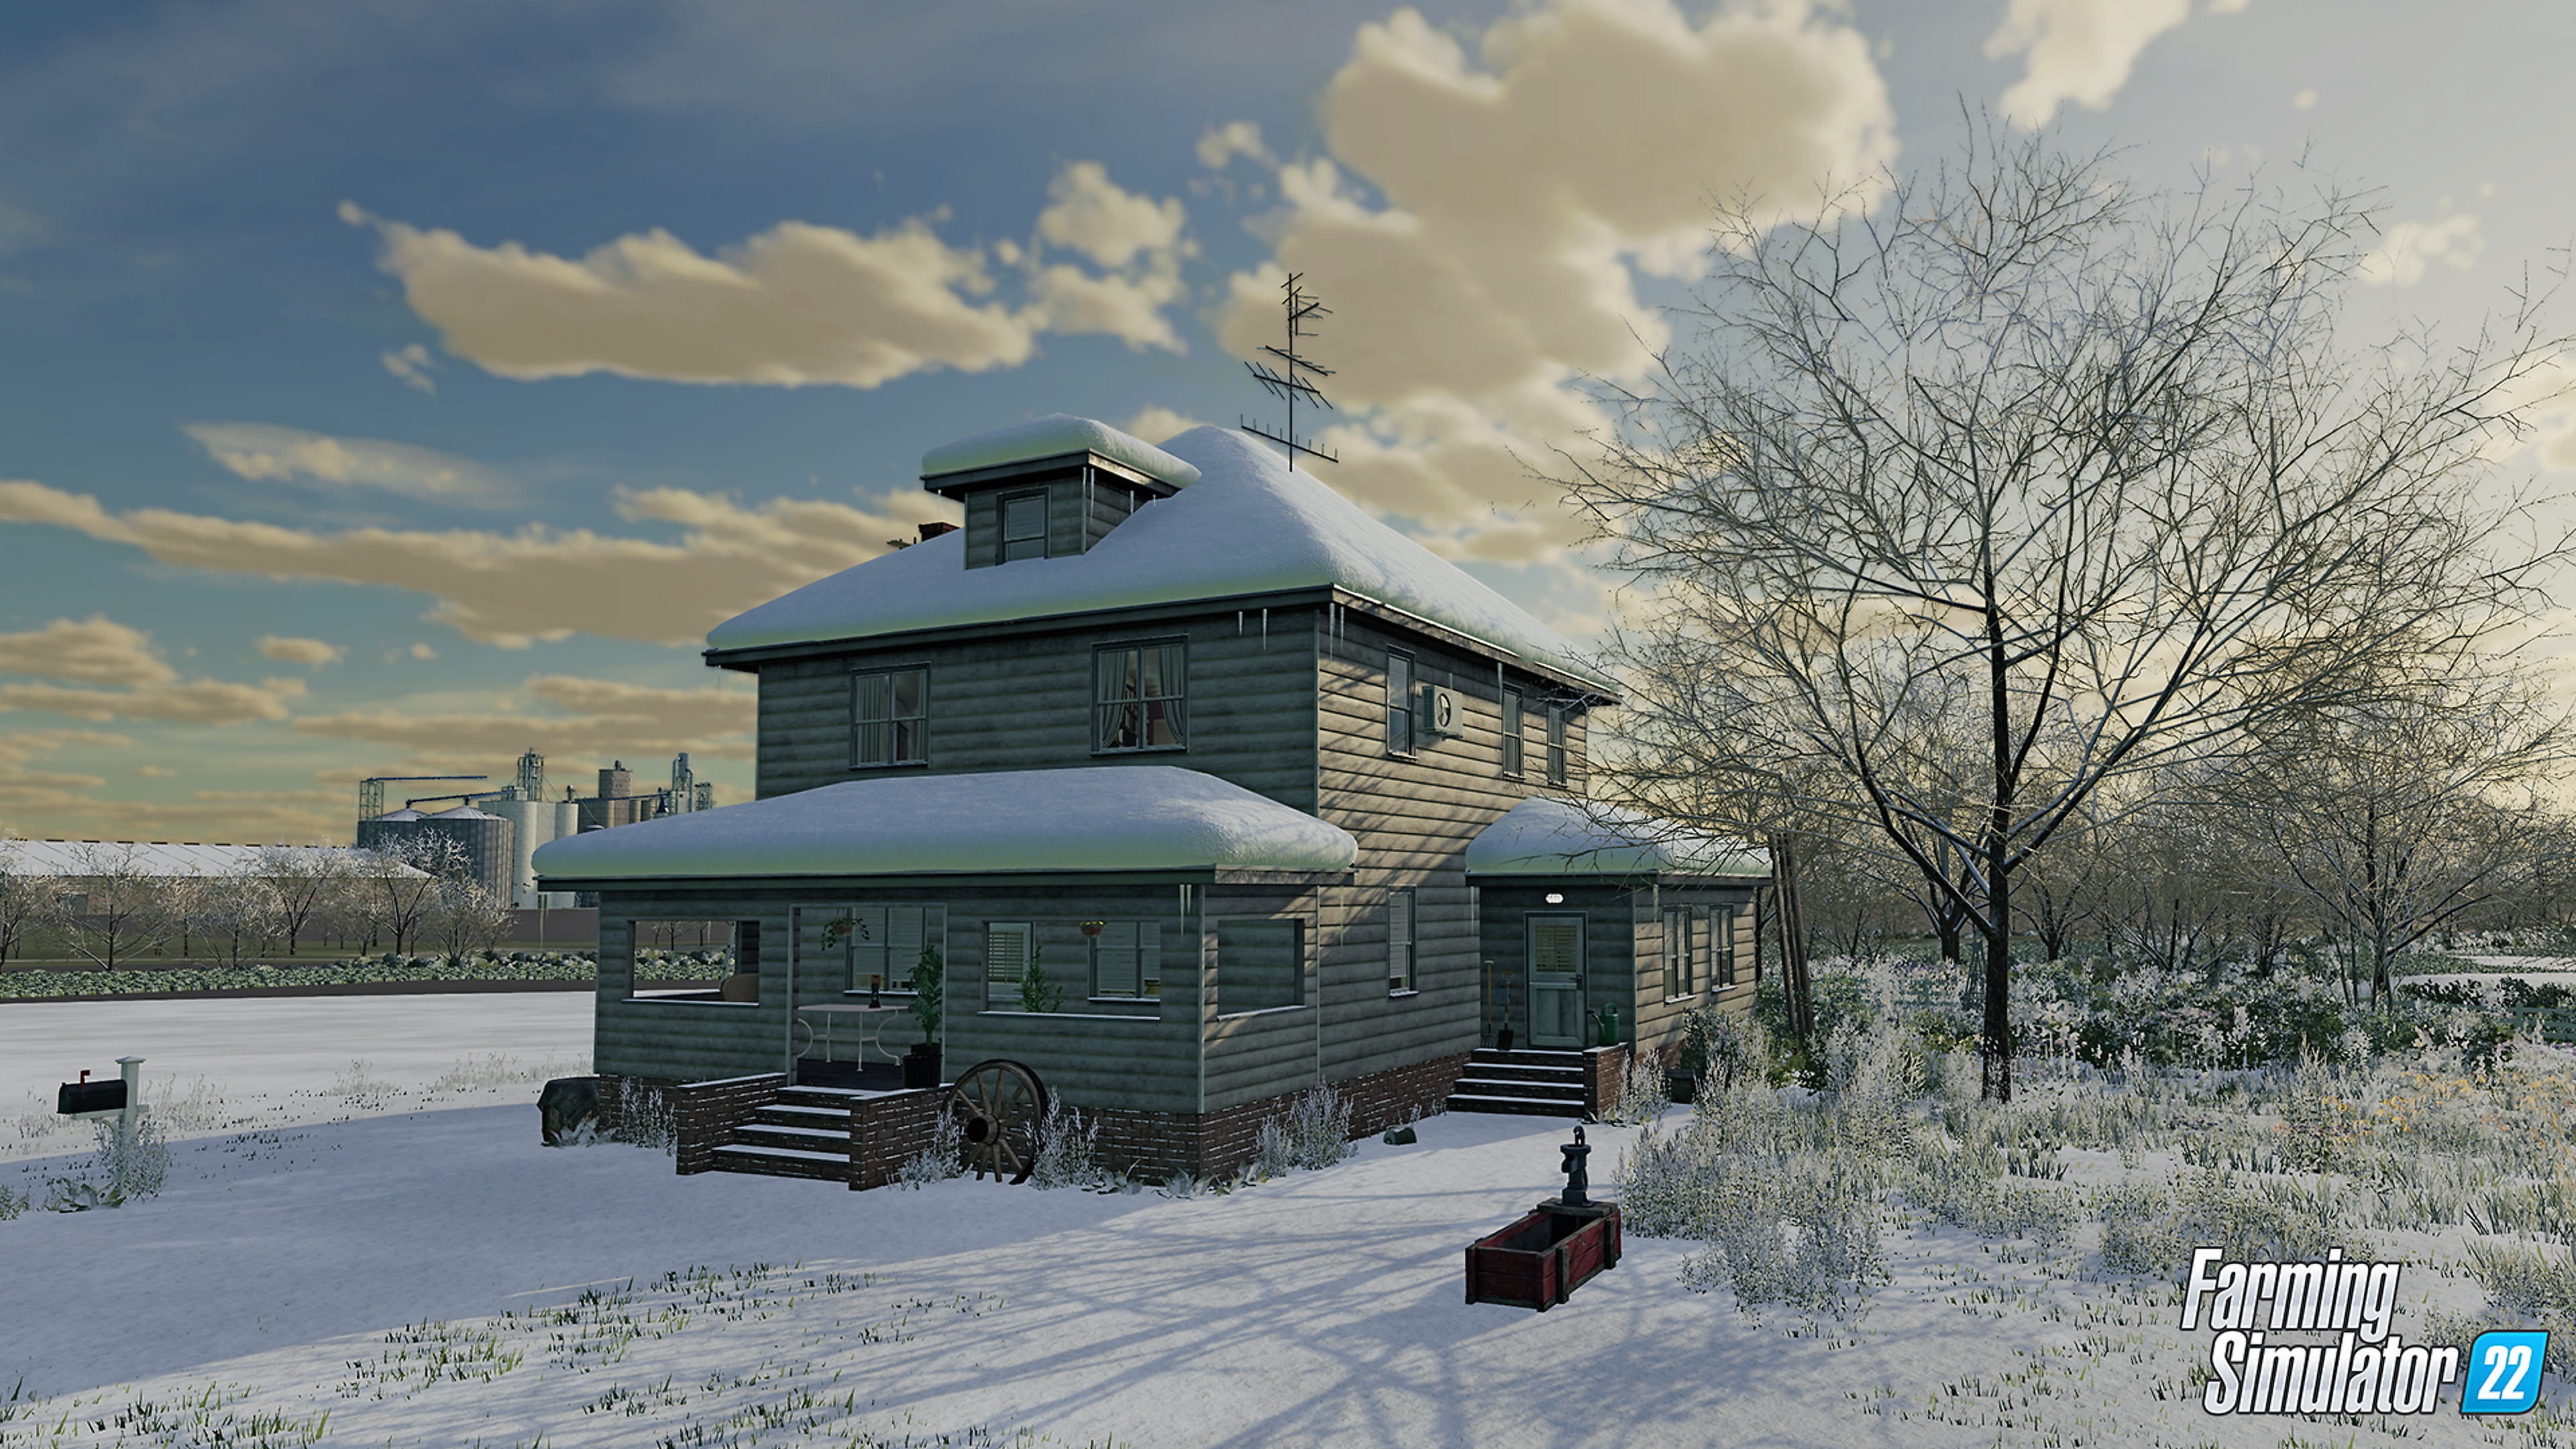 لقطة شاشة للعبة Farming Simulator 22